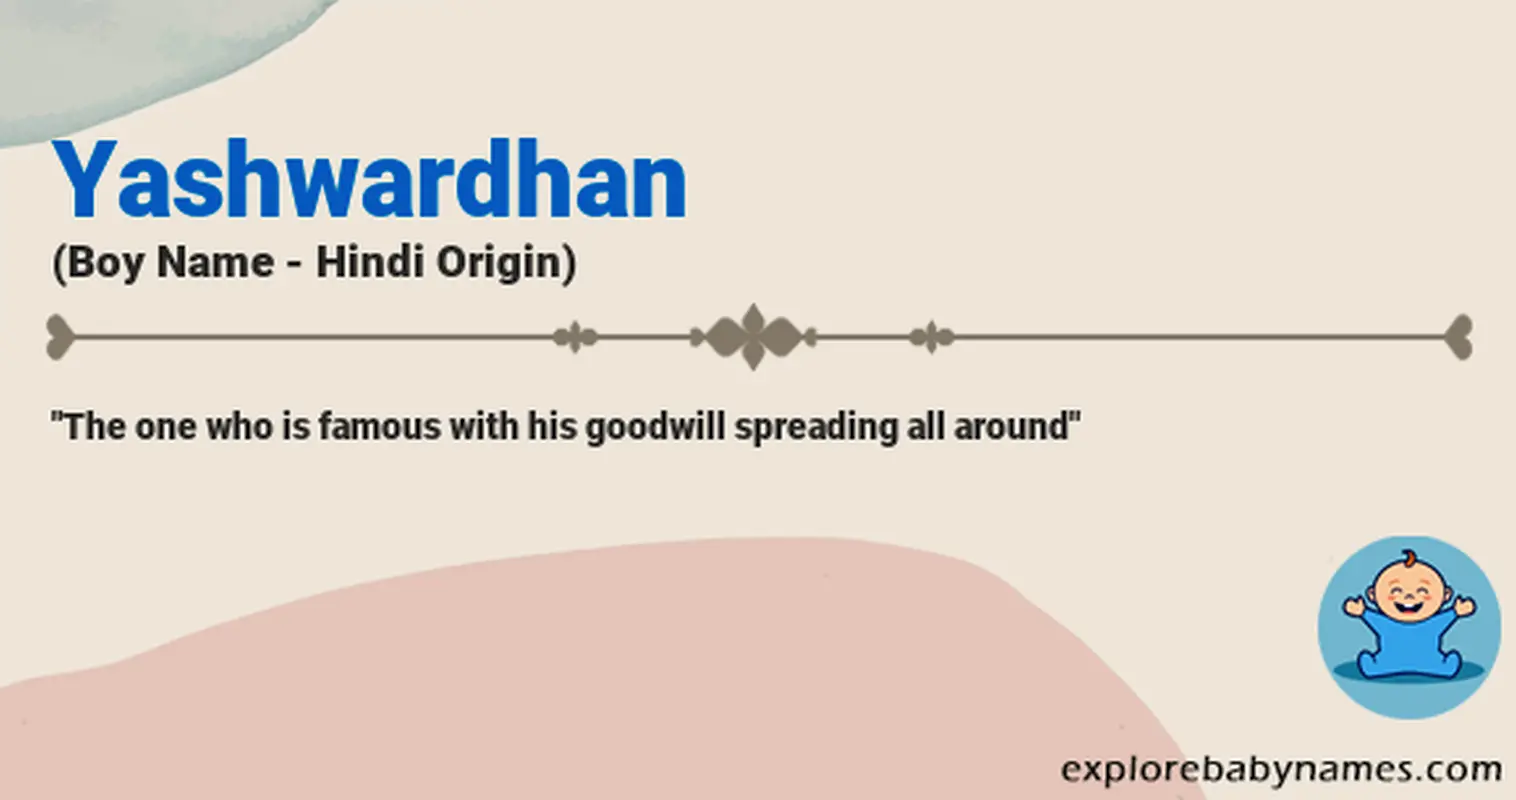 Meaning of Yashwardhan